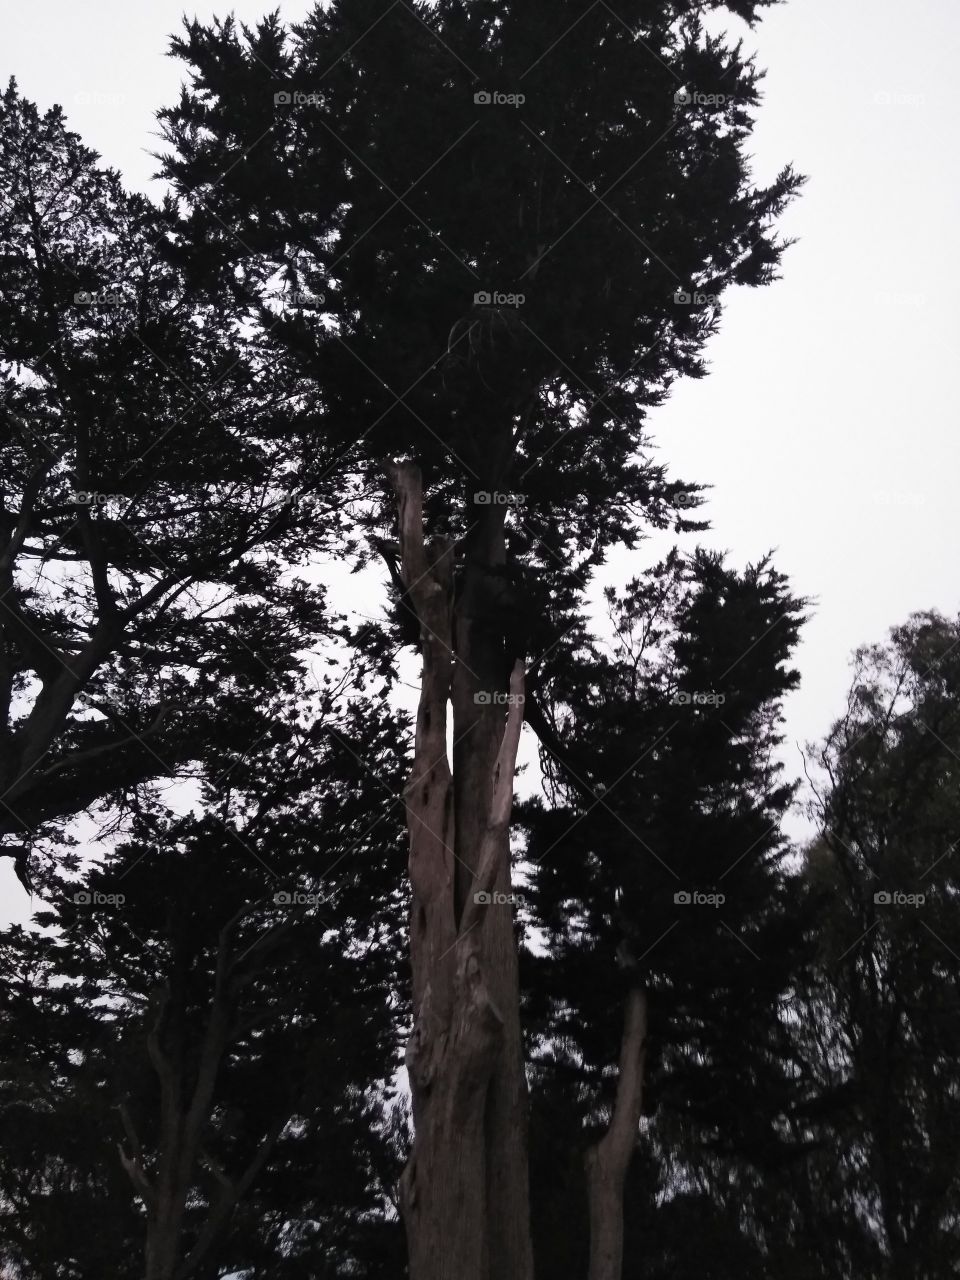 San Francisco tree